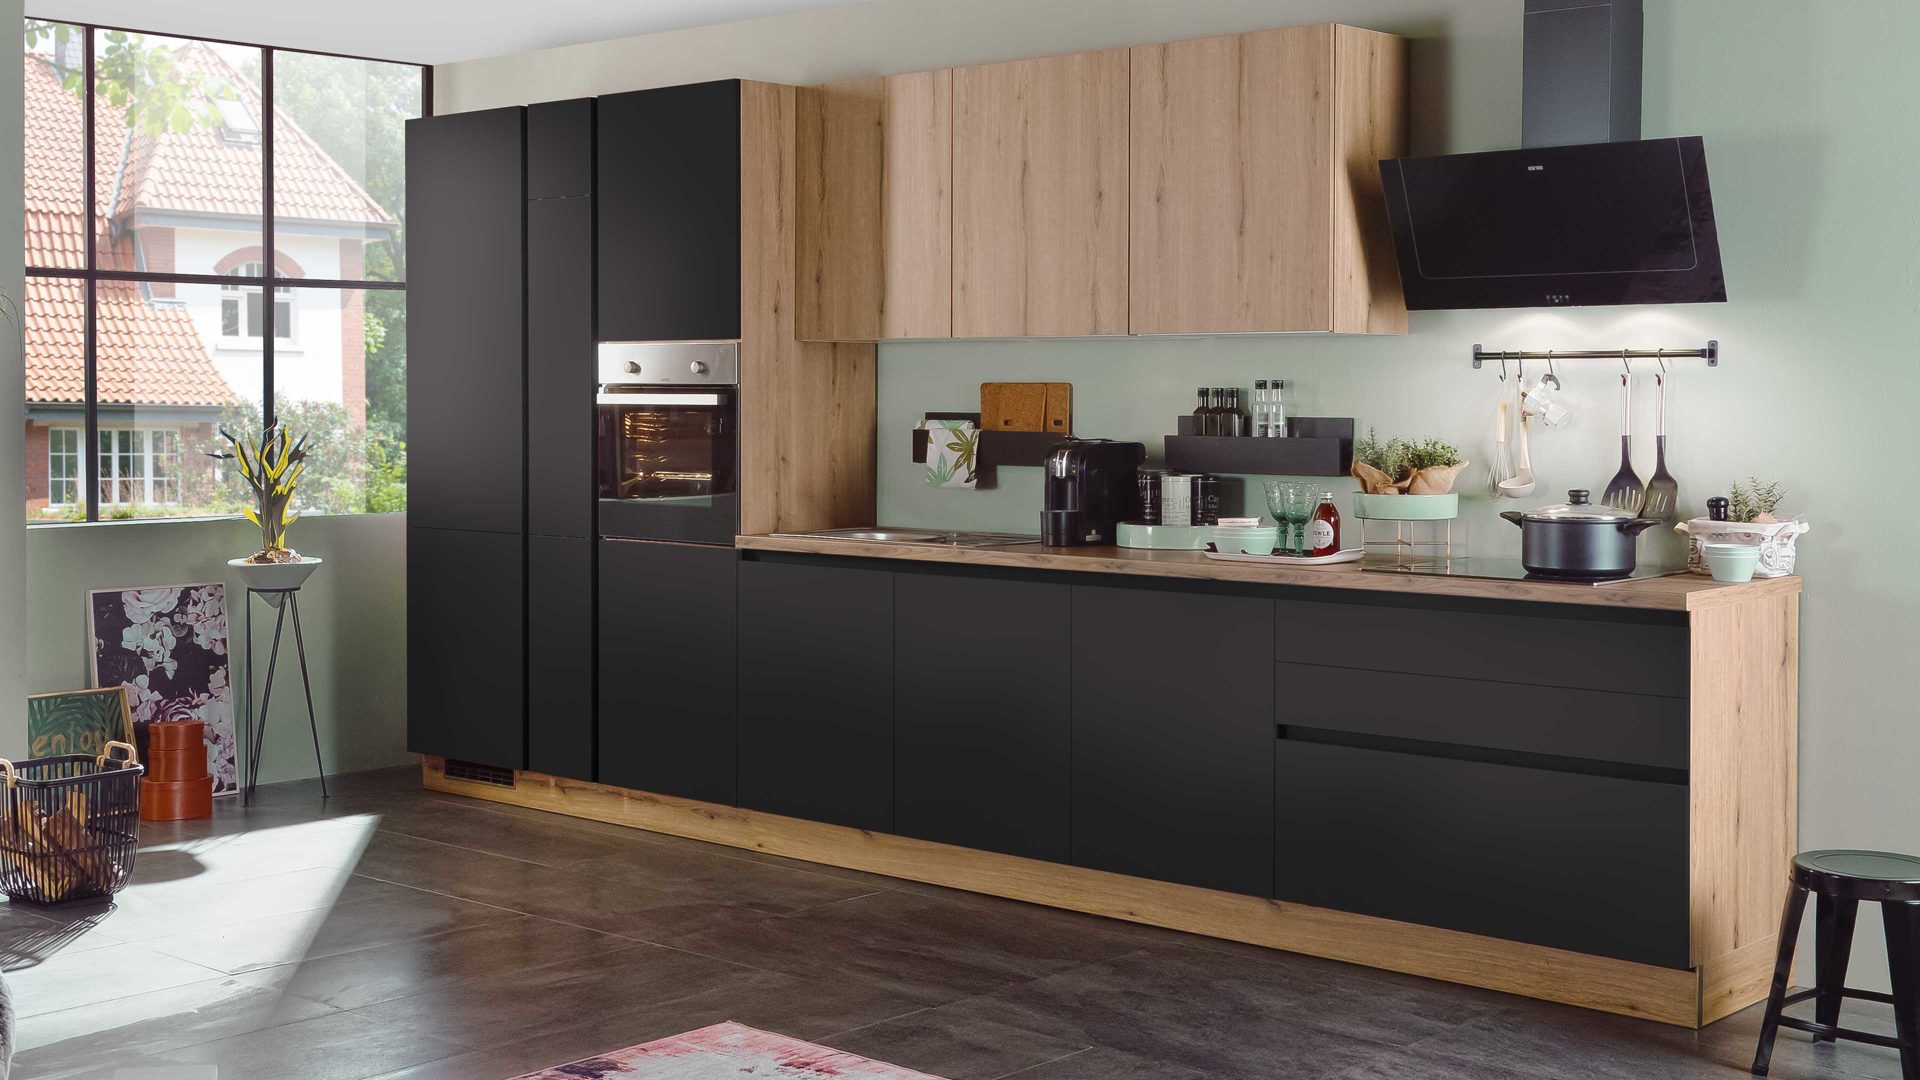 Einbauküche Express küchen aus Holz in Schwarz EXPRESS KÜCHEN Einbauküche Clean mit Einbaugeräten Mattschwarz & Eiche astig - Länge ca. 433 cm